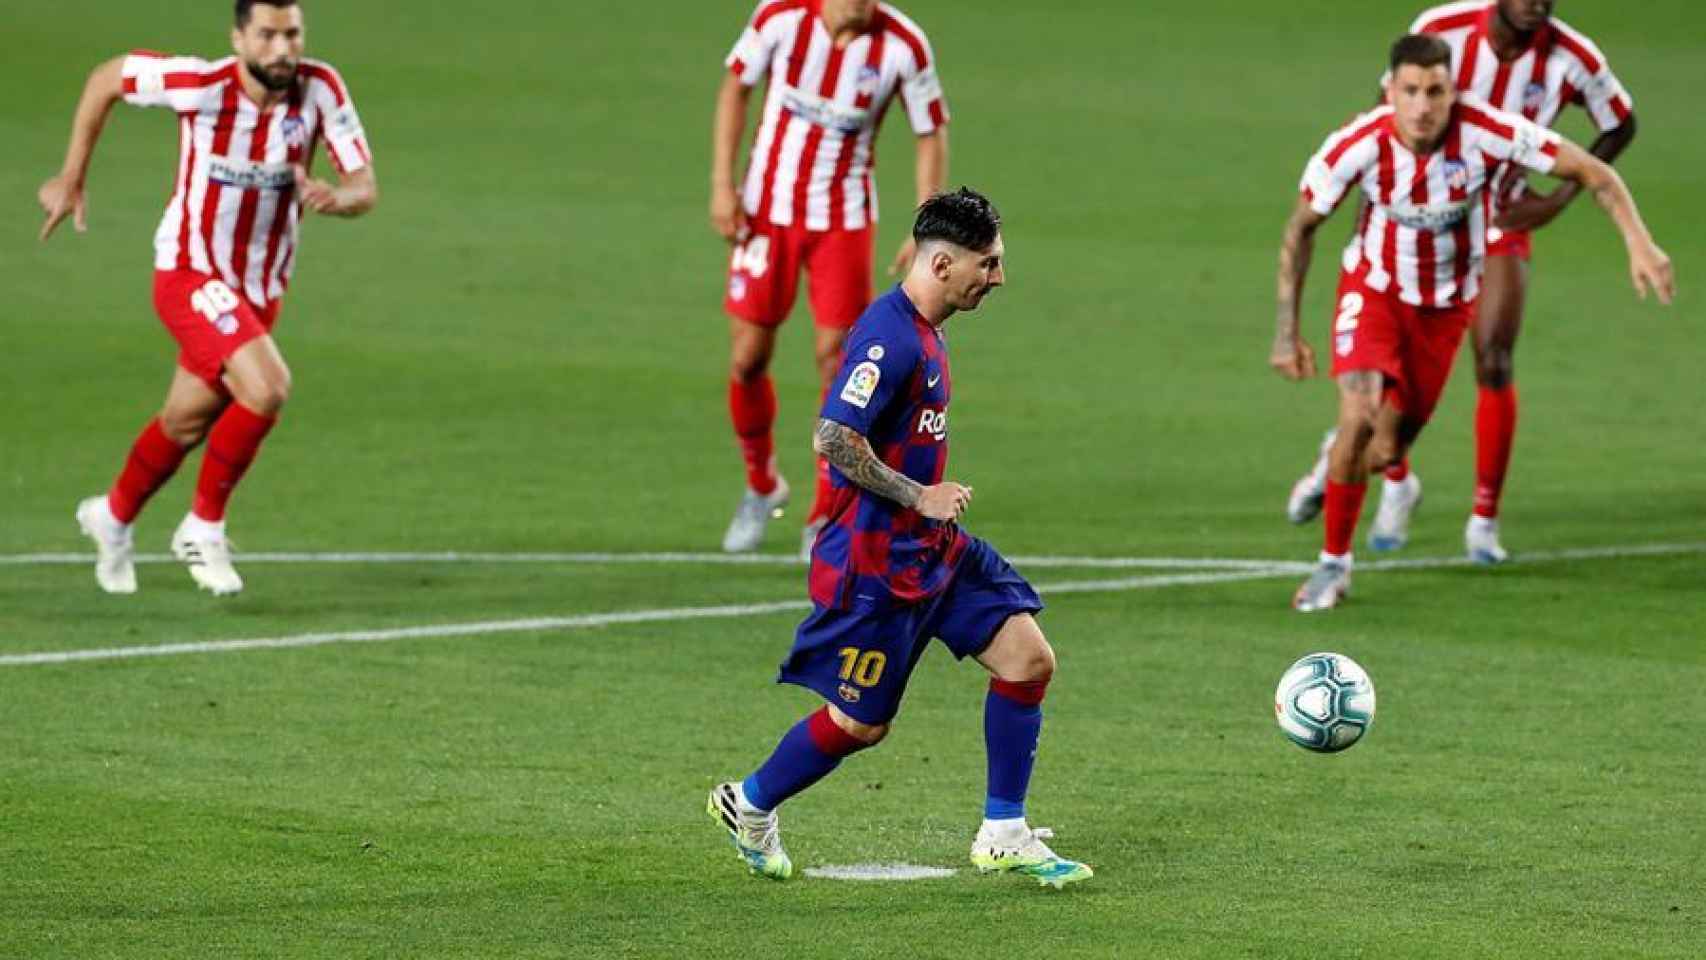 Lanzamiento de penalti de Messi a lo Panenka en el Barcelona - Atlético de Madrid de La Liga